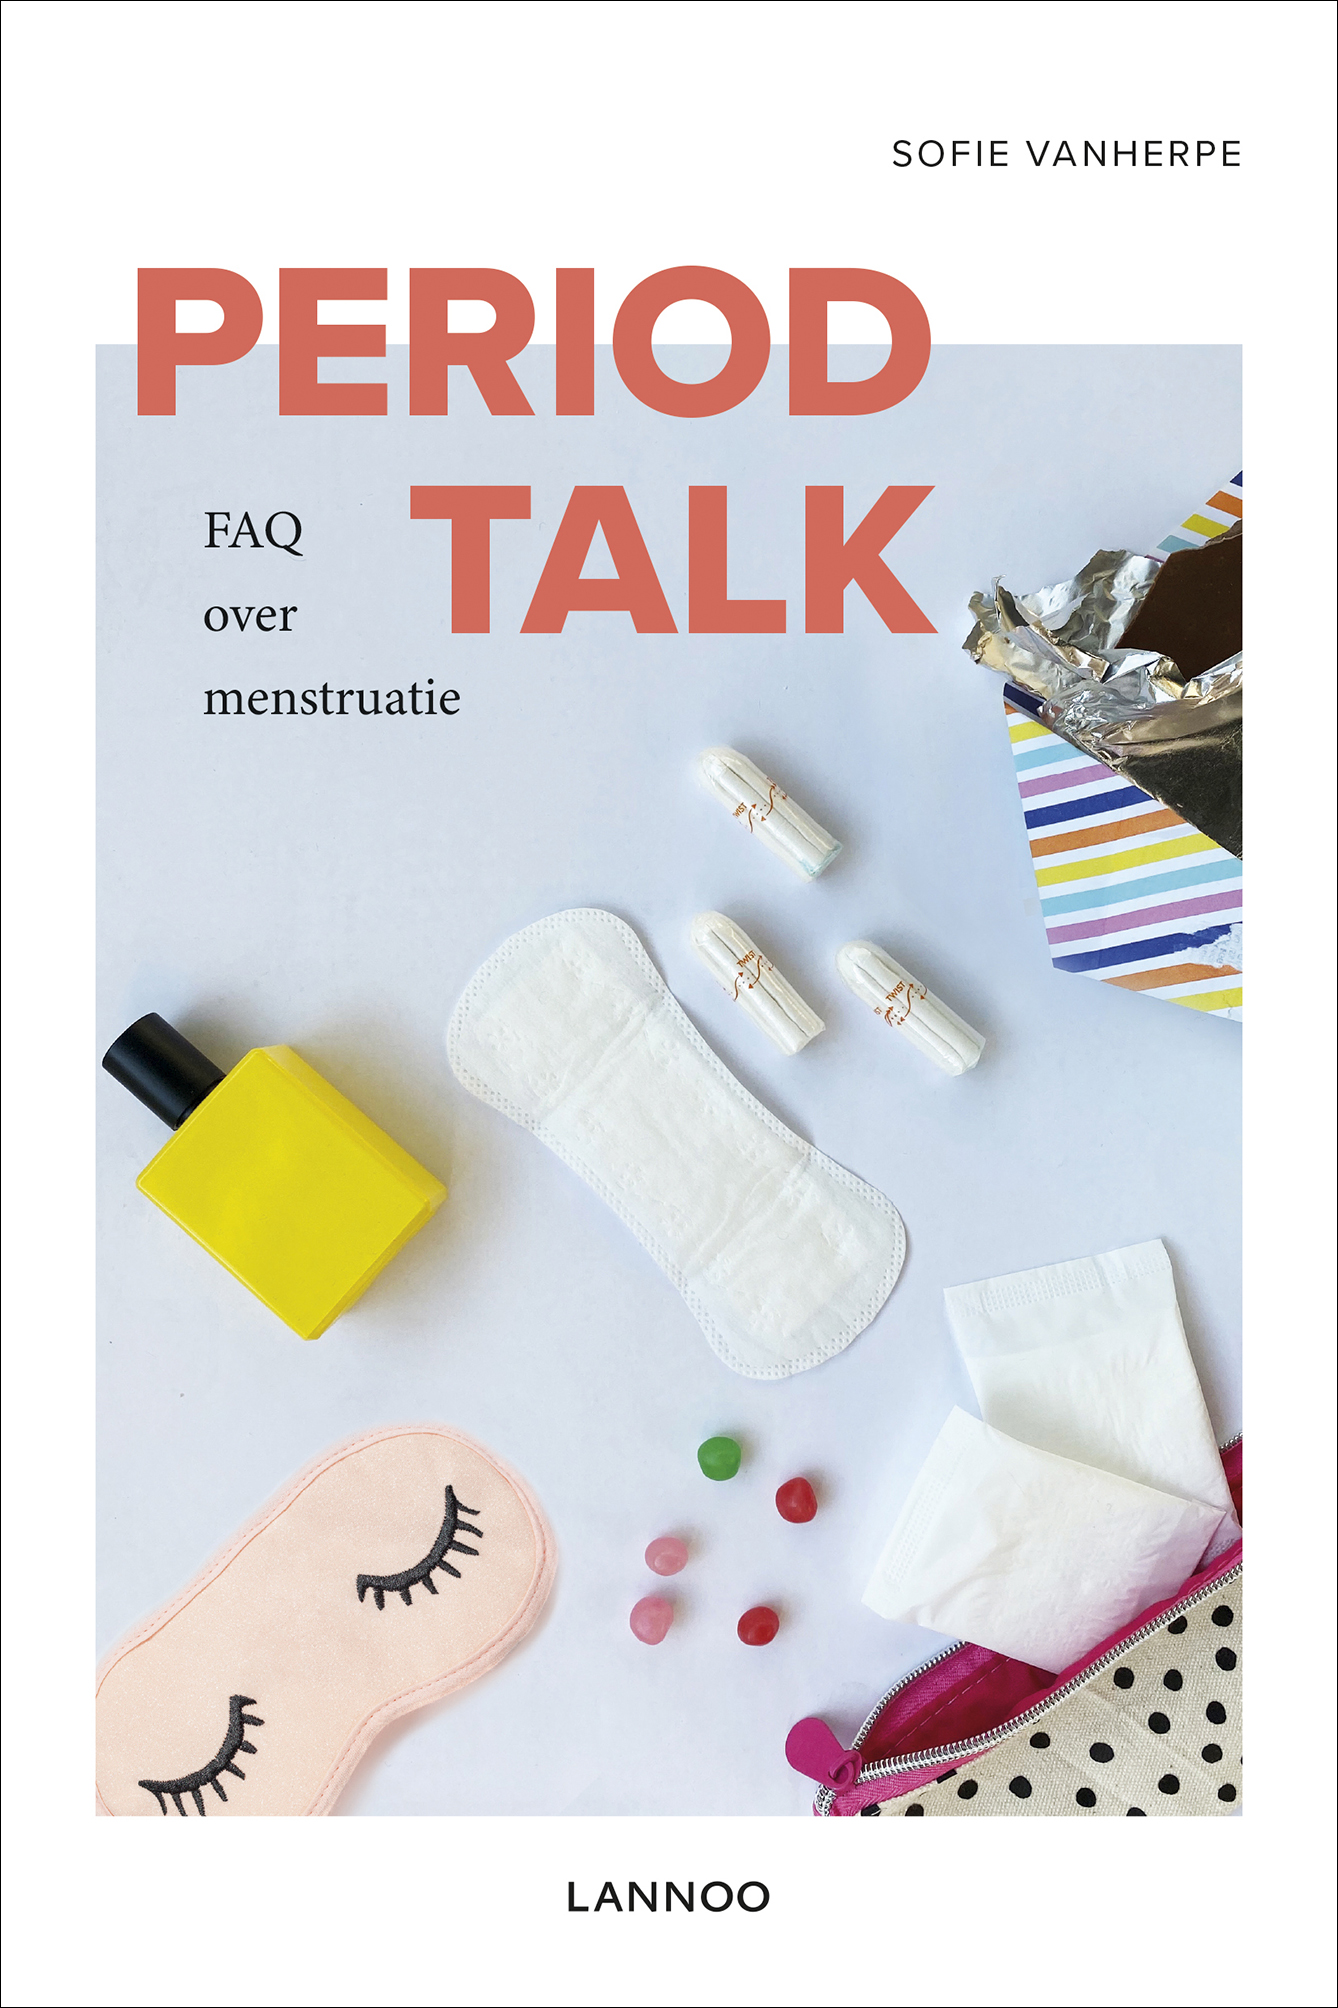 Period Talk